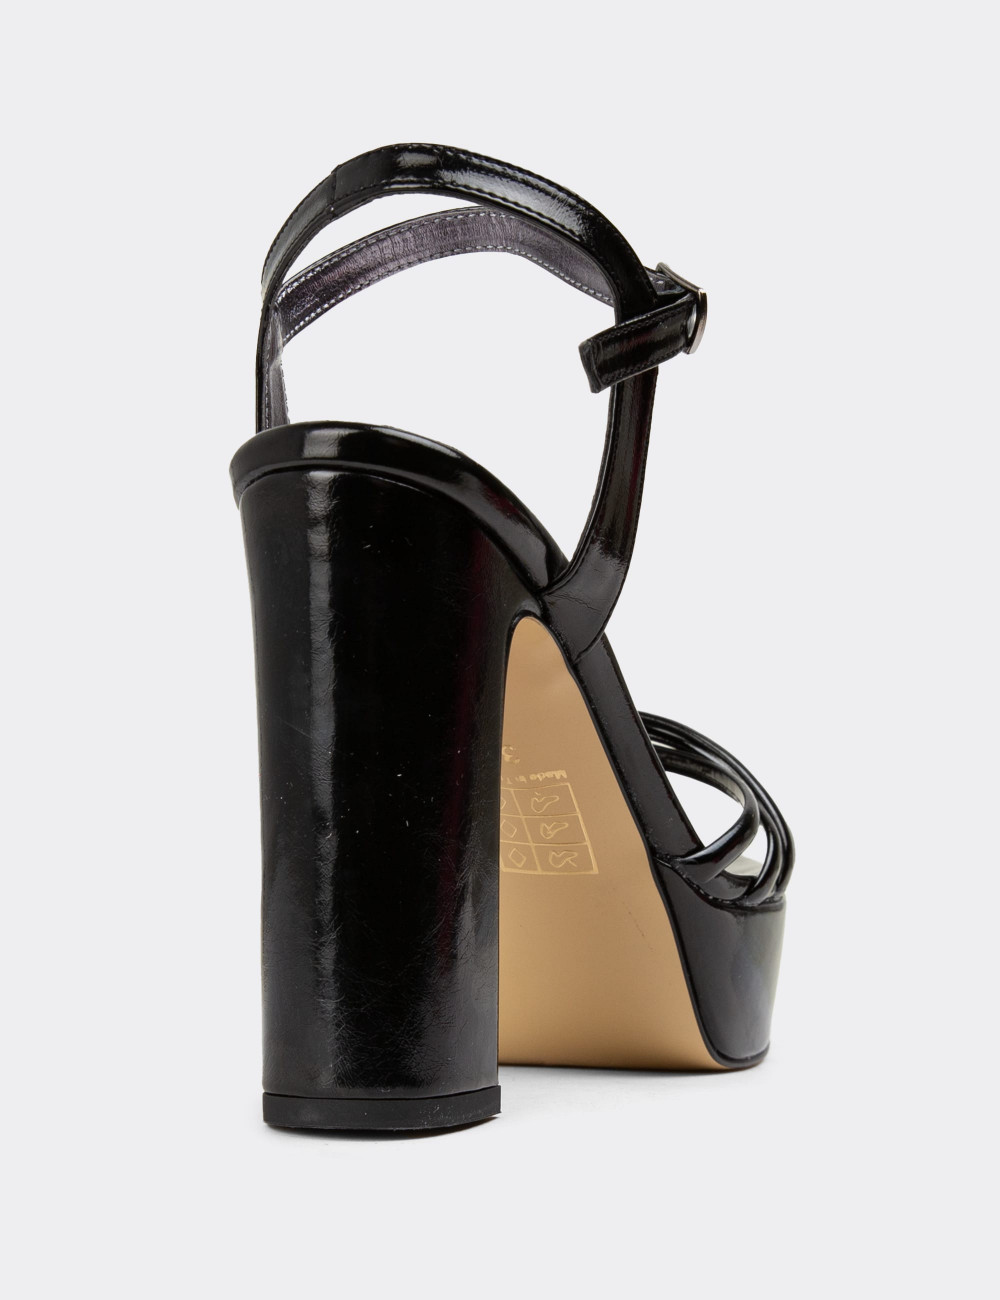 Siyah Platform Topuklu Kadın Abiye Ayakkabı - K2032ZSYHM01